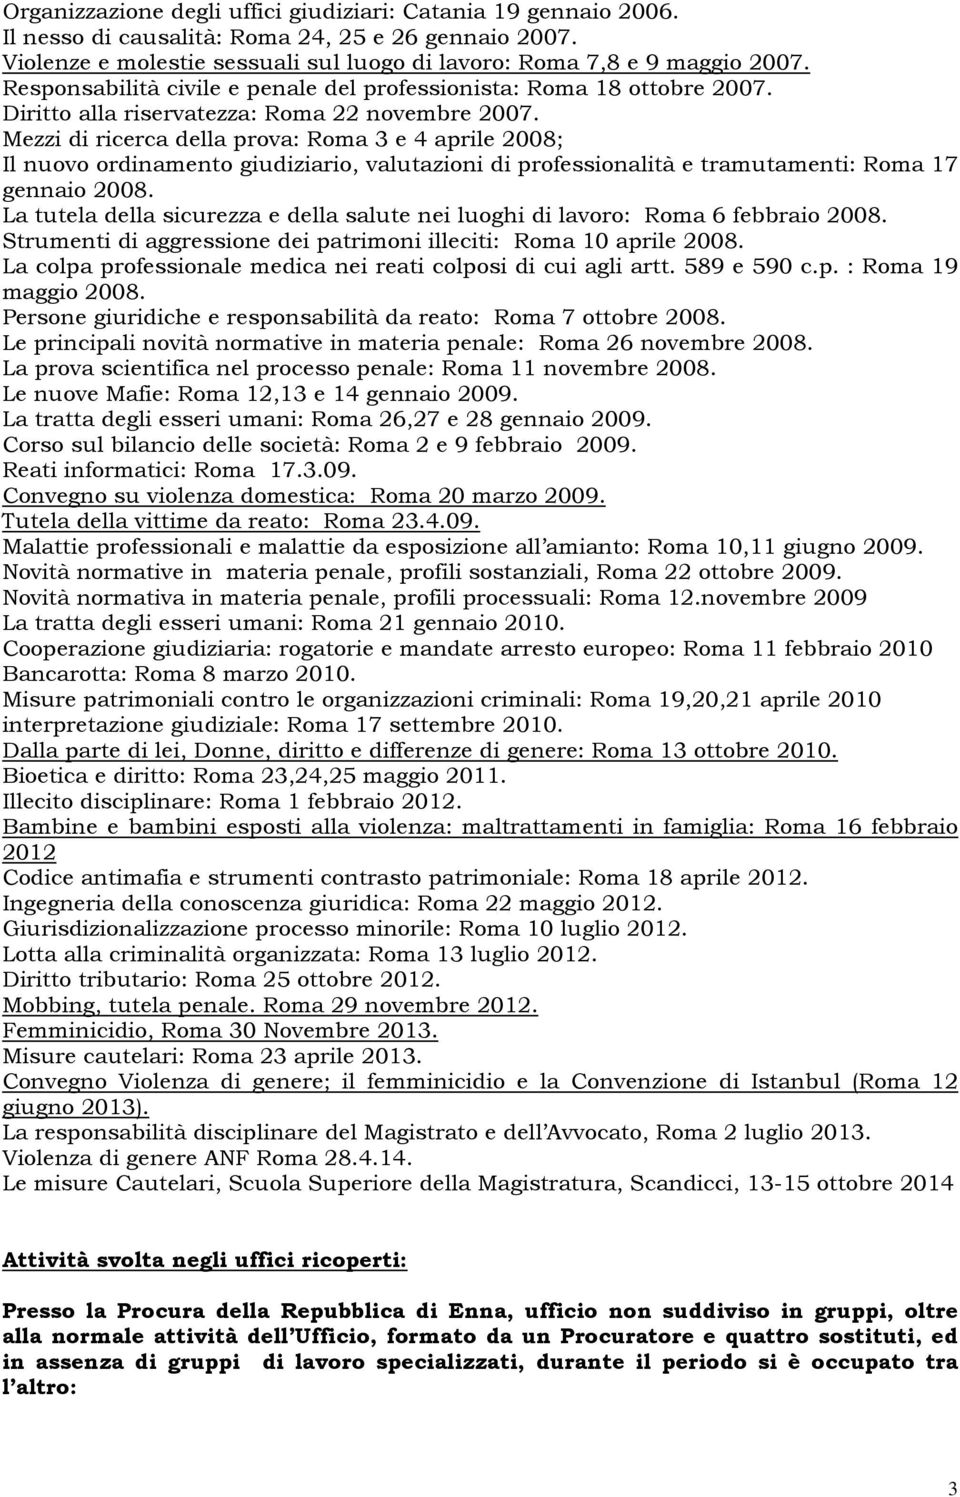 Mezzi di ricerca della prova: Roma 3 e 4 aprile 2008; Il nuovo ordinamento giudiziario, valutazioni di professionalità e tramutamenti: Roma 17 gennaio 2008.